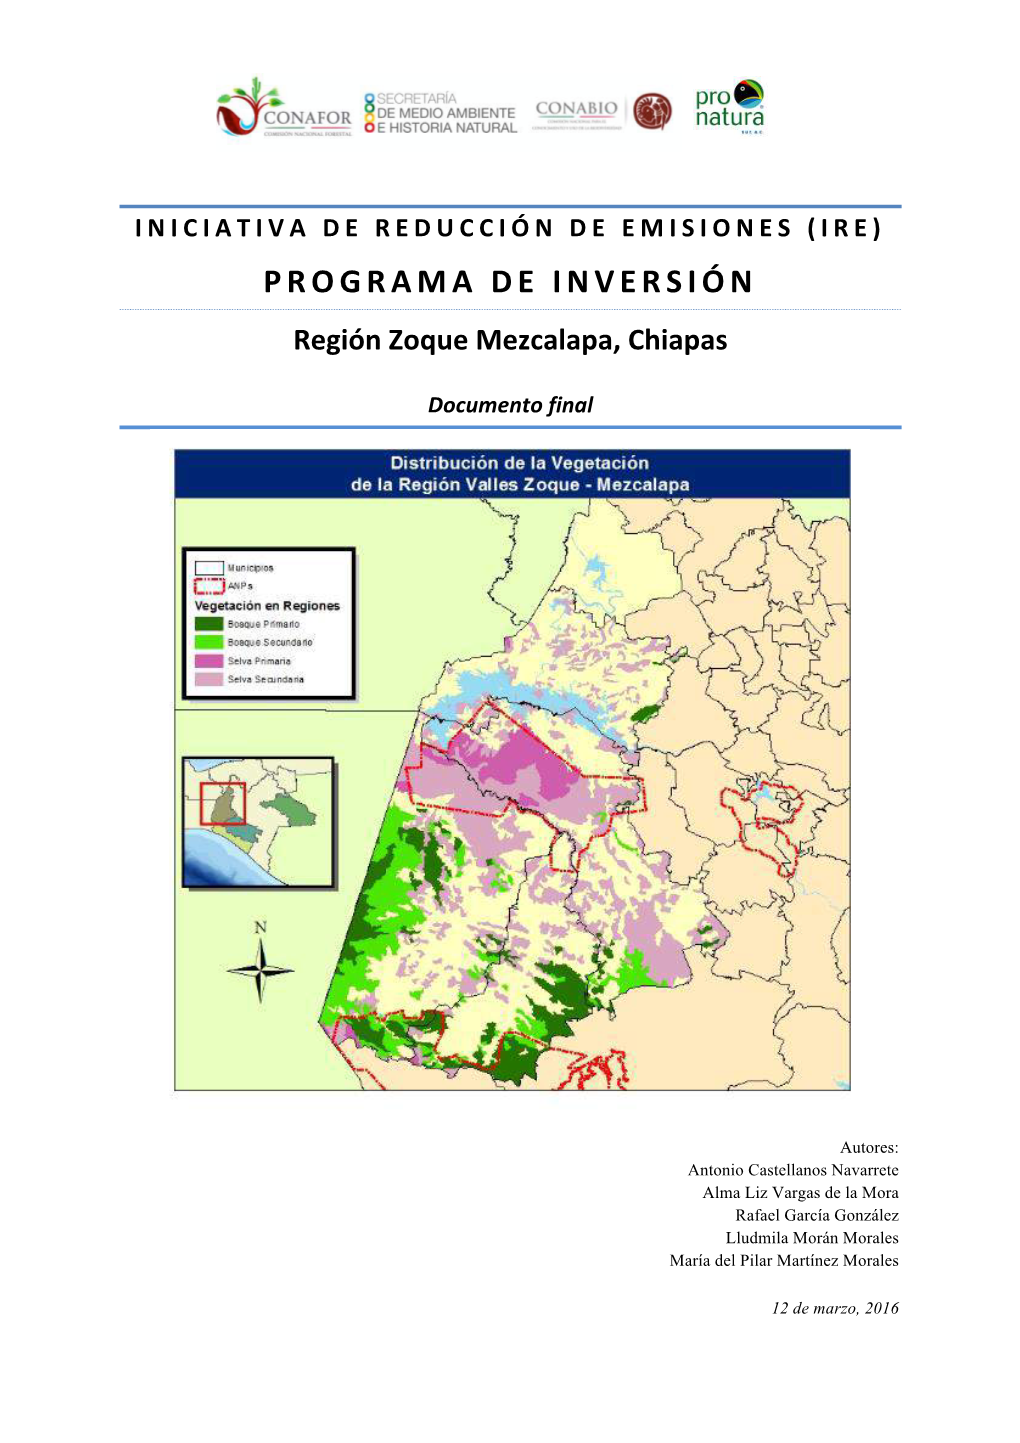 PROGRAMA DE INVERSIÓN Región Zoque Mezcalapa, Chiapas